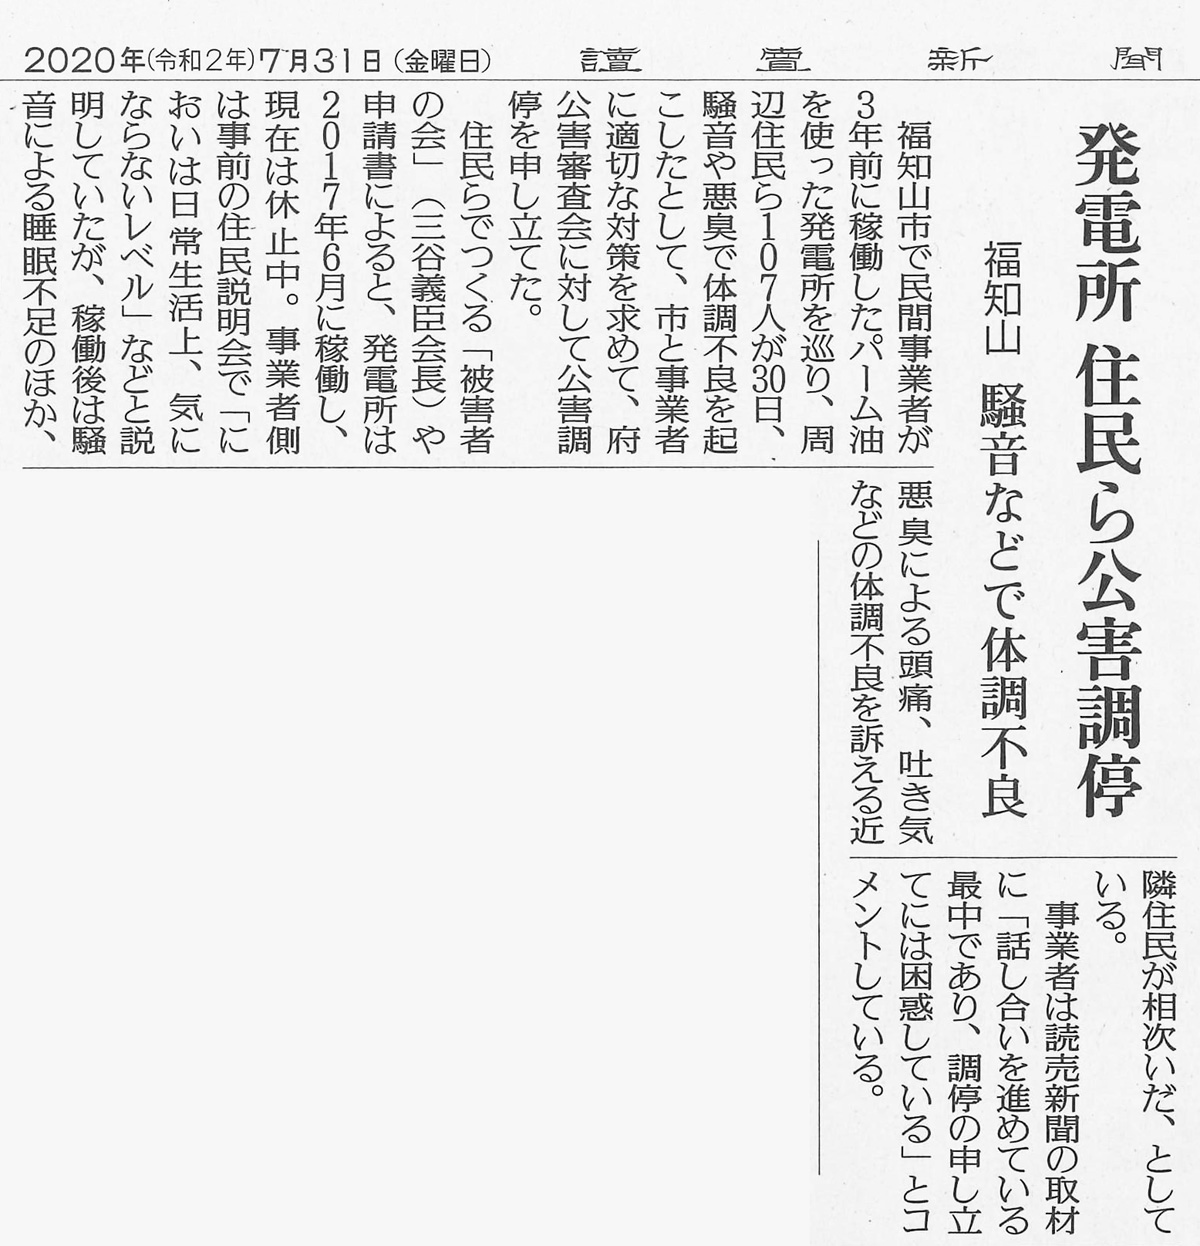 三恵観光に対する公害調停の新聞報道